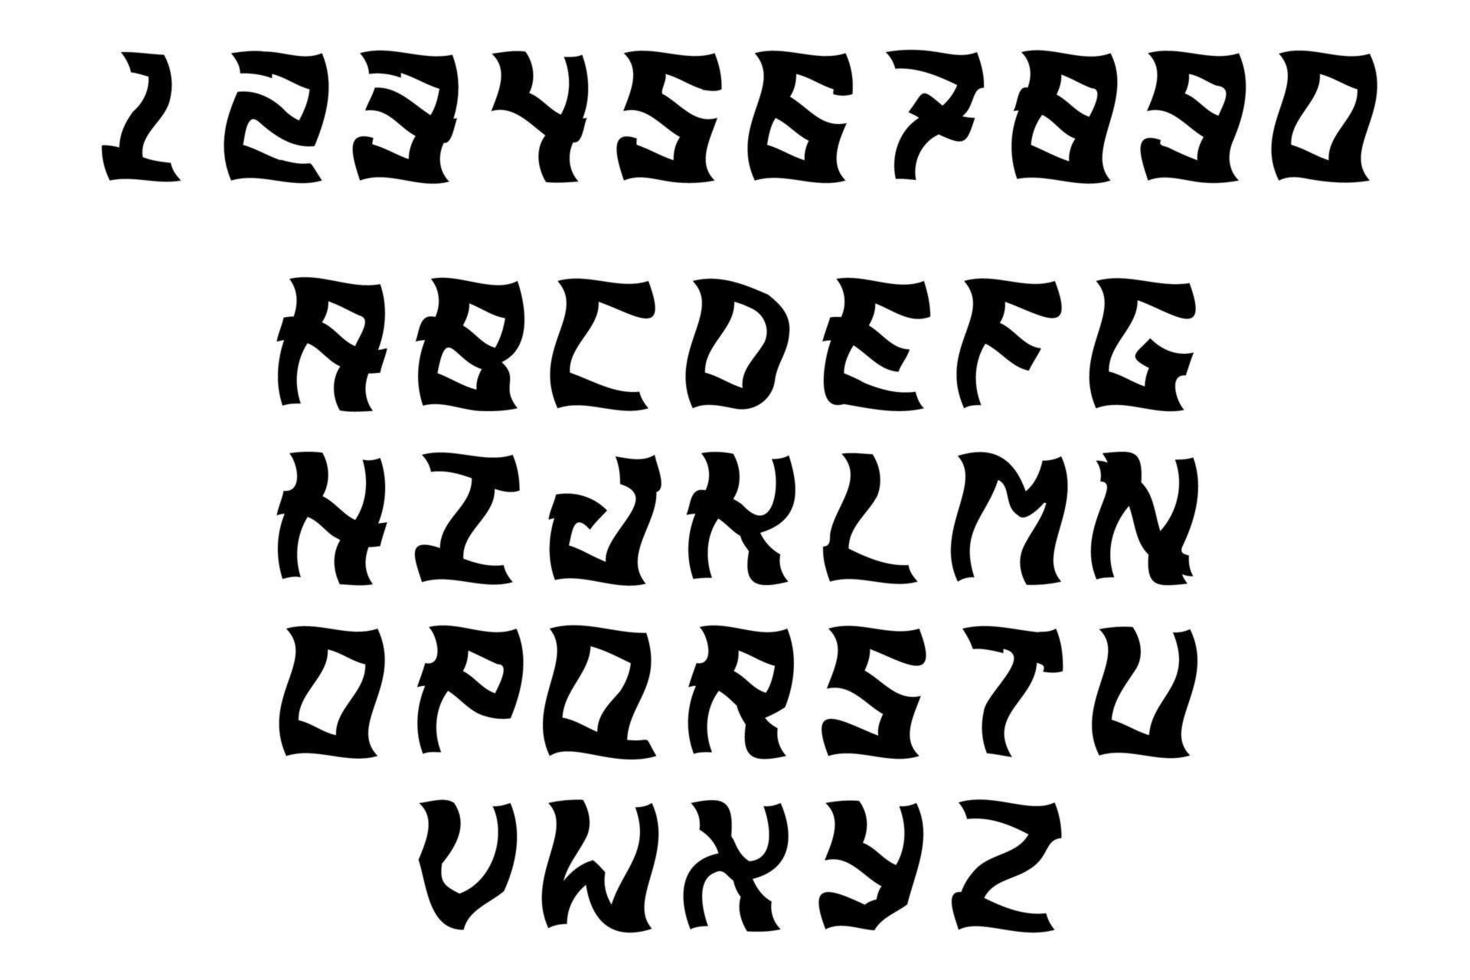 caracteres en mayúsculas en blanco y negro. letras y números en color negro aislado sobre fondo blanco. diseño de fuente de miedo. vector